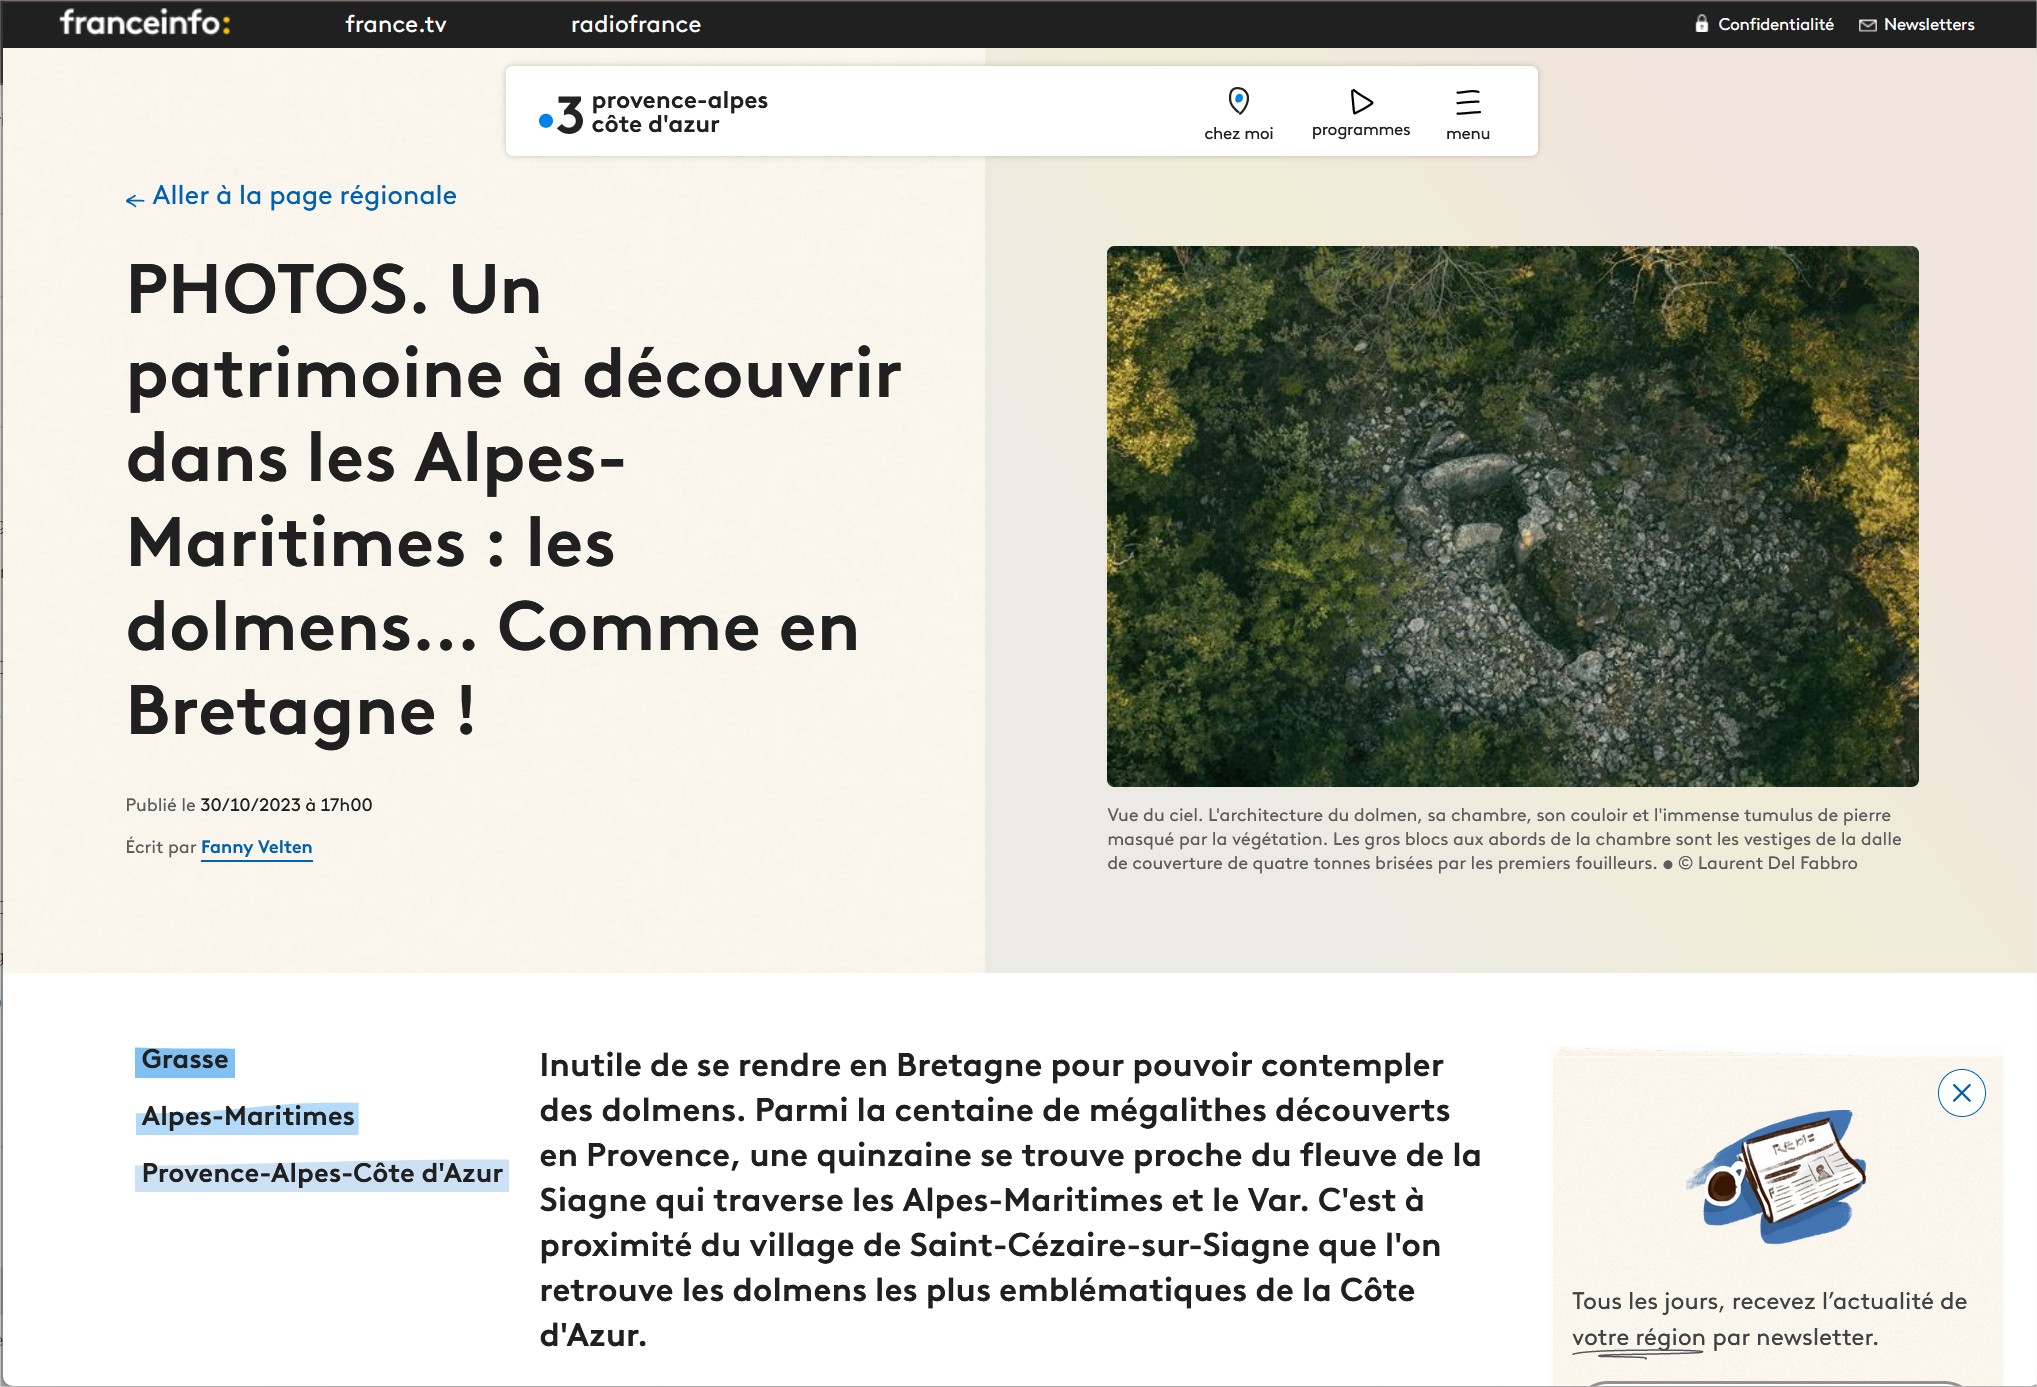 PHOTOS. Un patrimoine à découvrir dans les Alpes Maritimes les dolmens Comme en Bretagne Mozilla Firefox